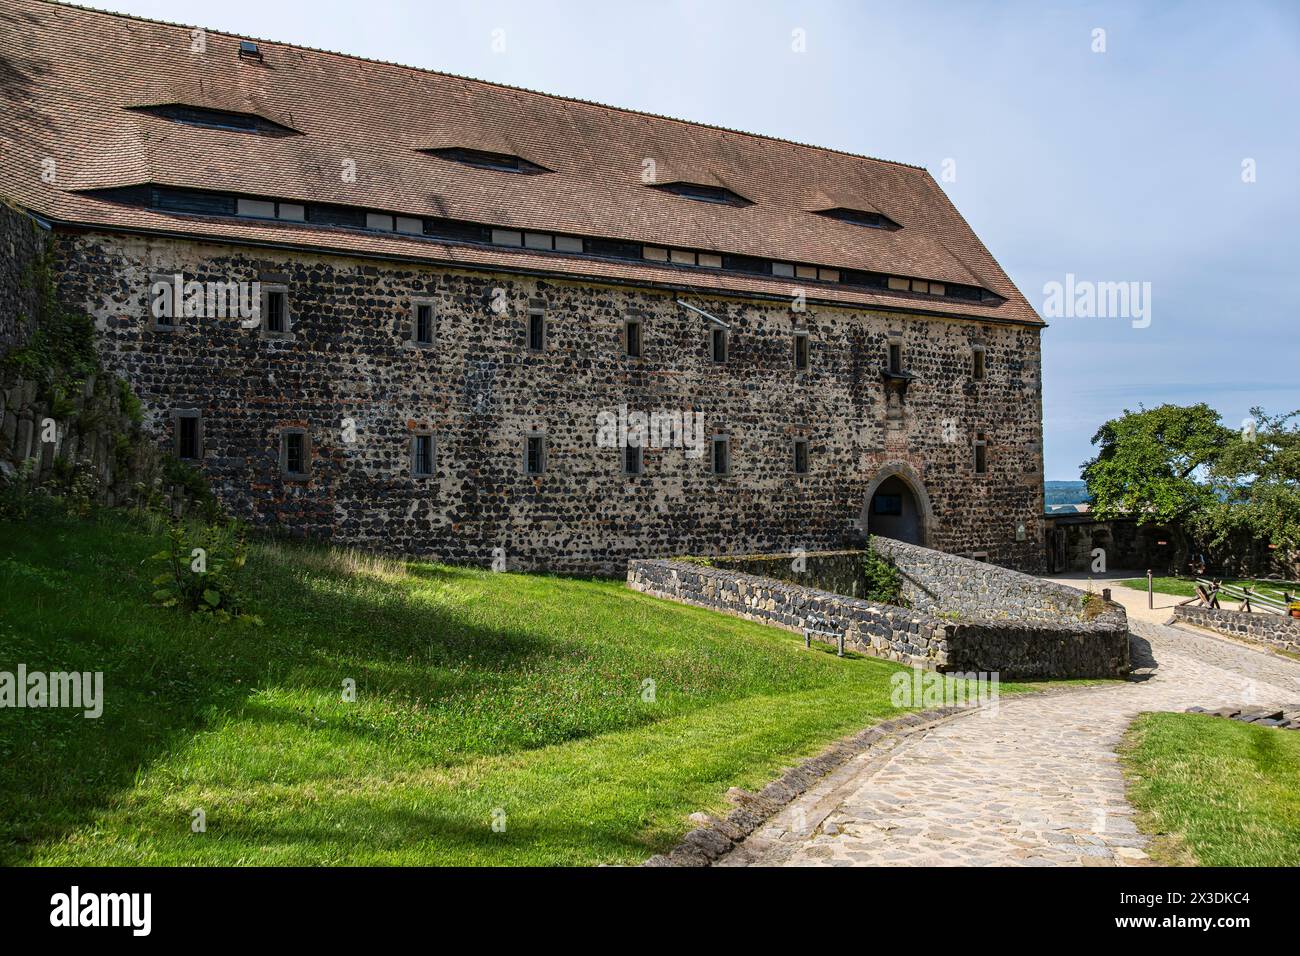 Castello di Stolpen, parziale rovina di un castello medievale in cima a una collina, in seguito un palazzo e una fortezza, fondato sulla collina basaltica di Stolpen, Sassonia, Germania. Foto Stock